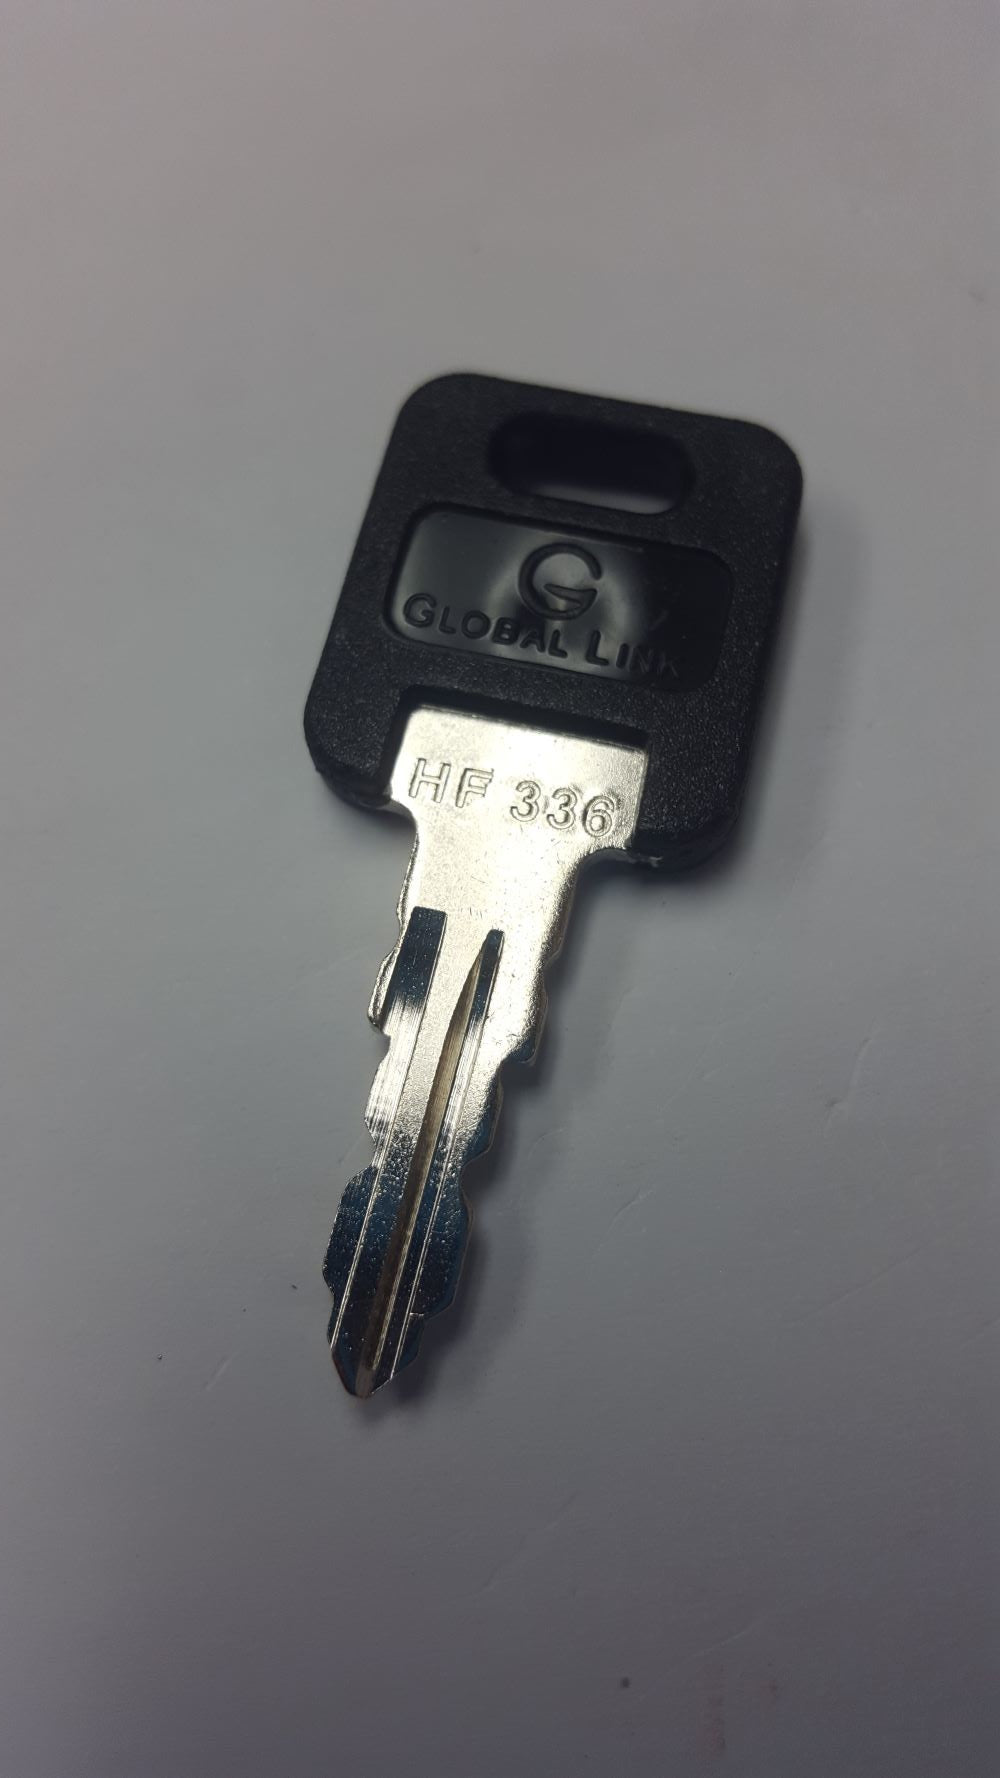 CPG KEY-HF-336 Pre-cut Stamped FIC Replacemnt HF336 Key